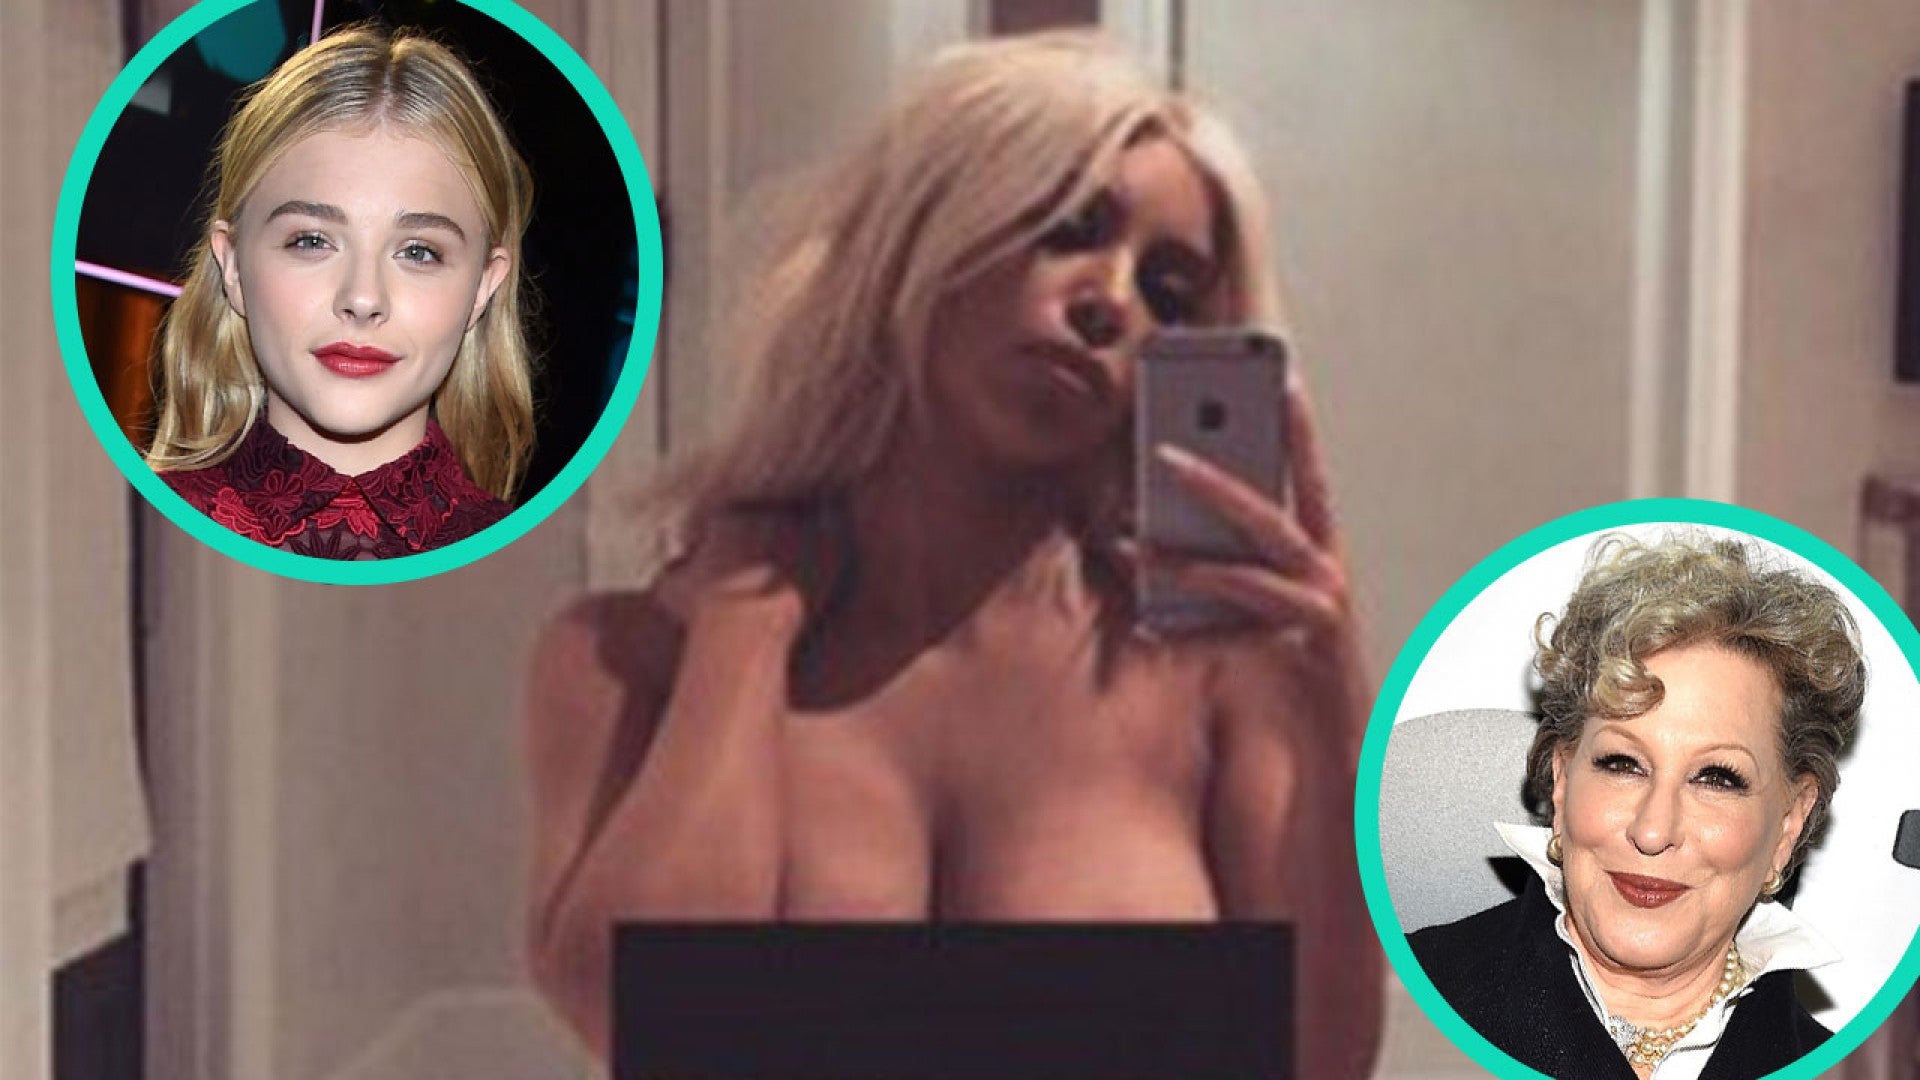 Chloe Moretz Porn Captions - Bette Midler and Chloe Grace Moretz Slam Kim Kardashian for Nude Selfie |  Entertainment Tonight